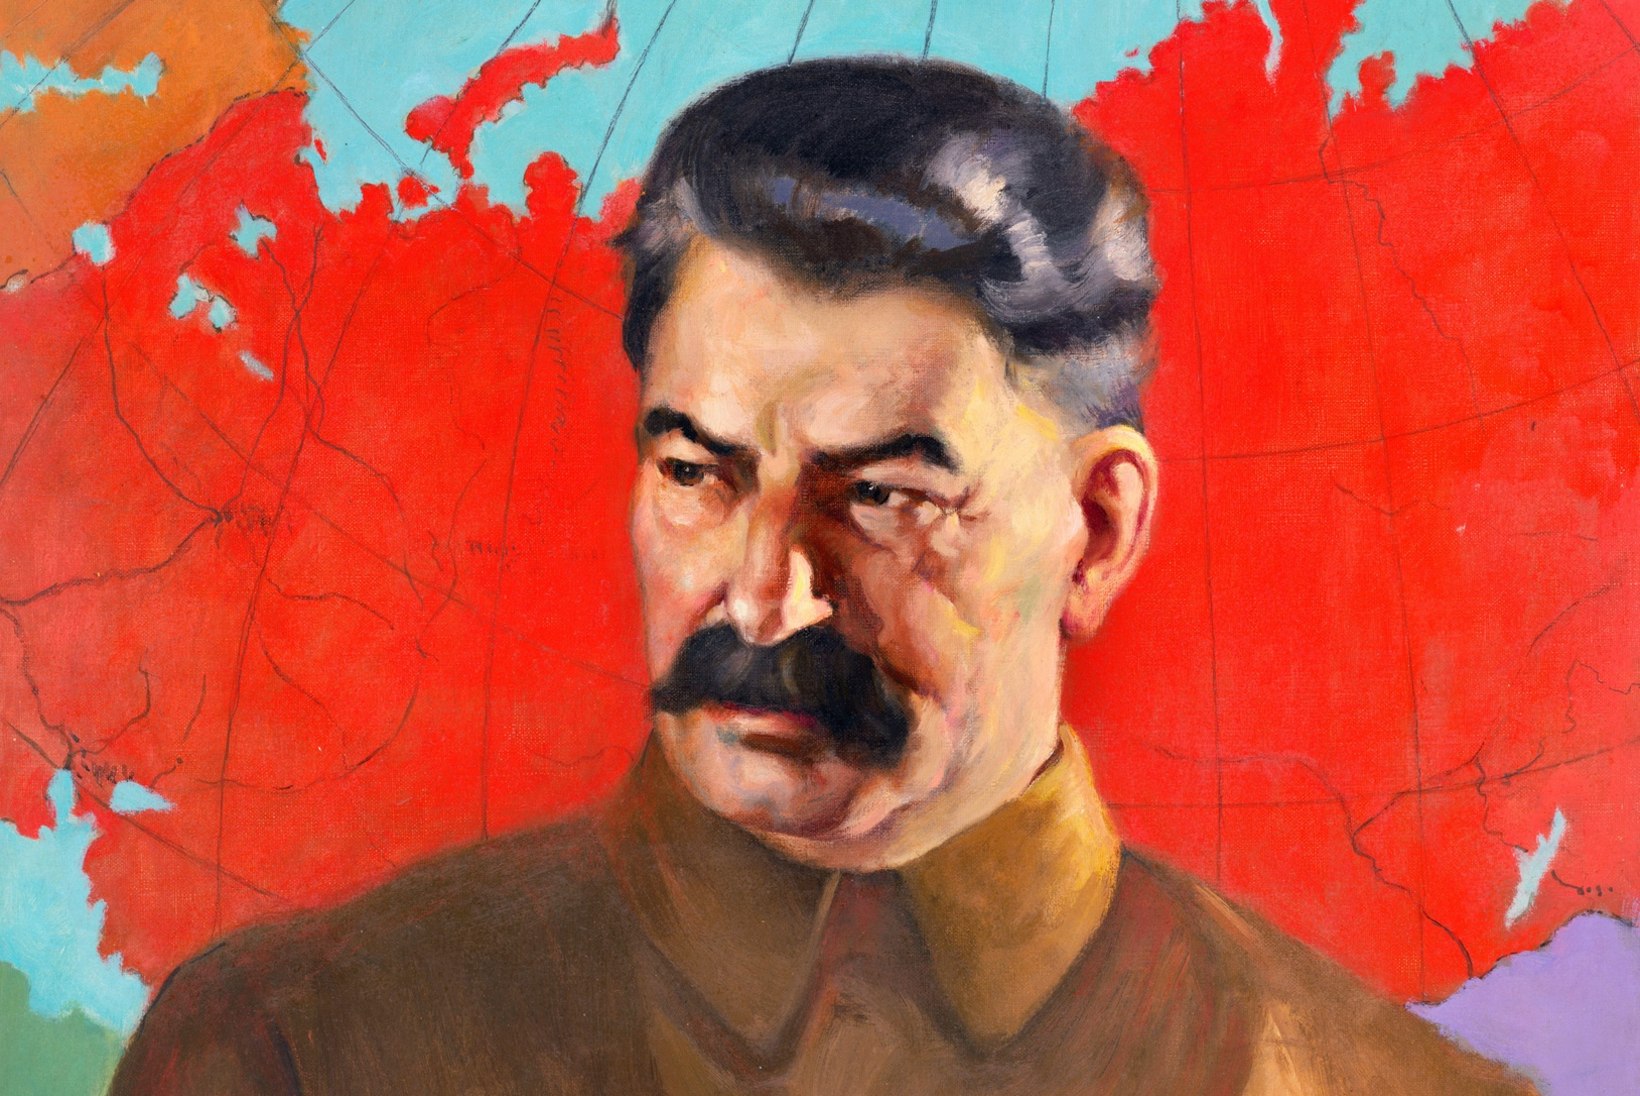 Märts on diktaatorite ja tsaaride hukkumise/hukkamise kuu Venemaal